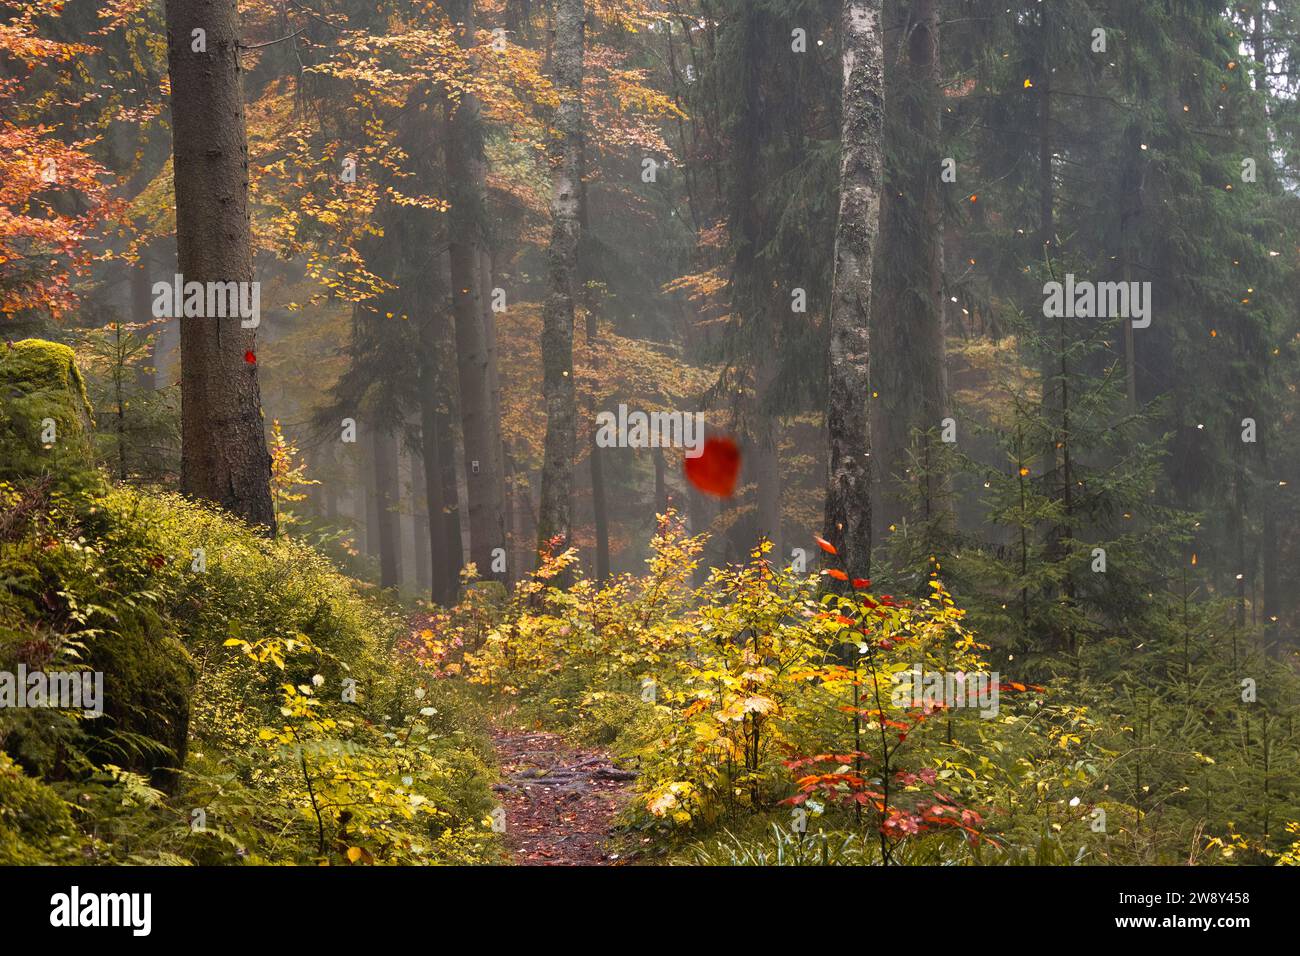 in einem herbstlichen Wald fallen bunte Blätter von den Bäumen, Dunst im Morgenlicht eines Herbstwaldes Stock Photo